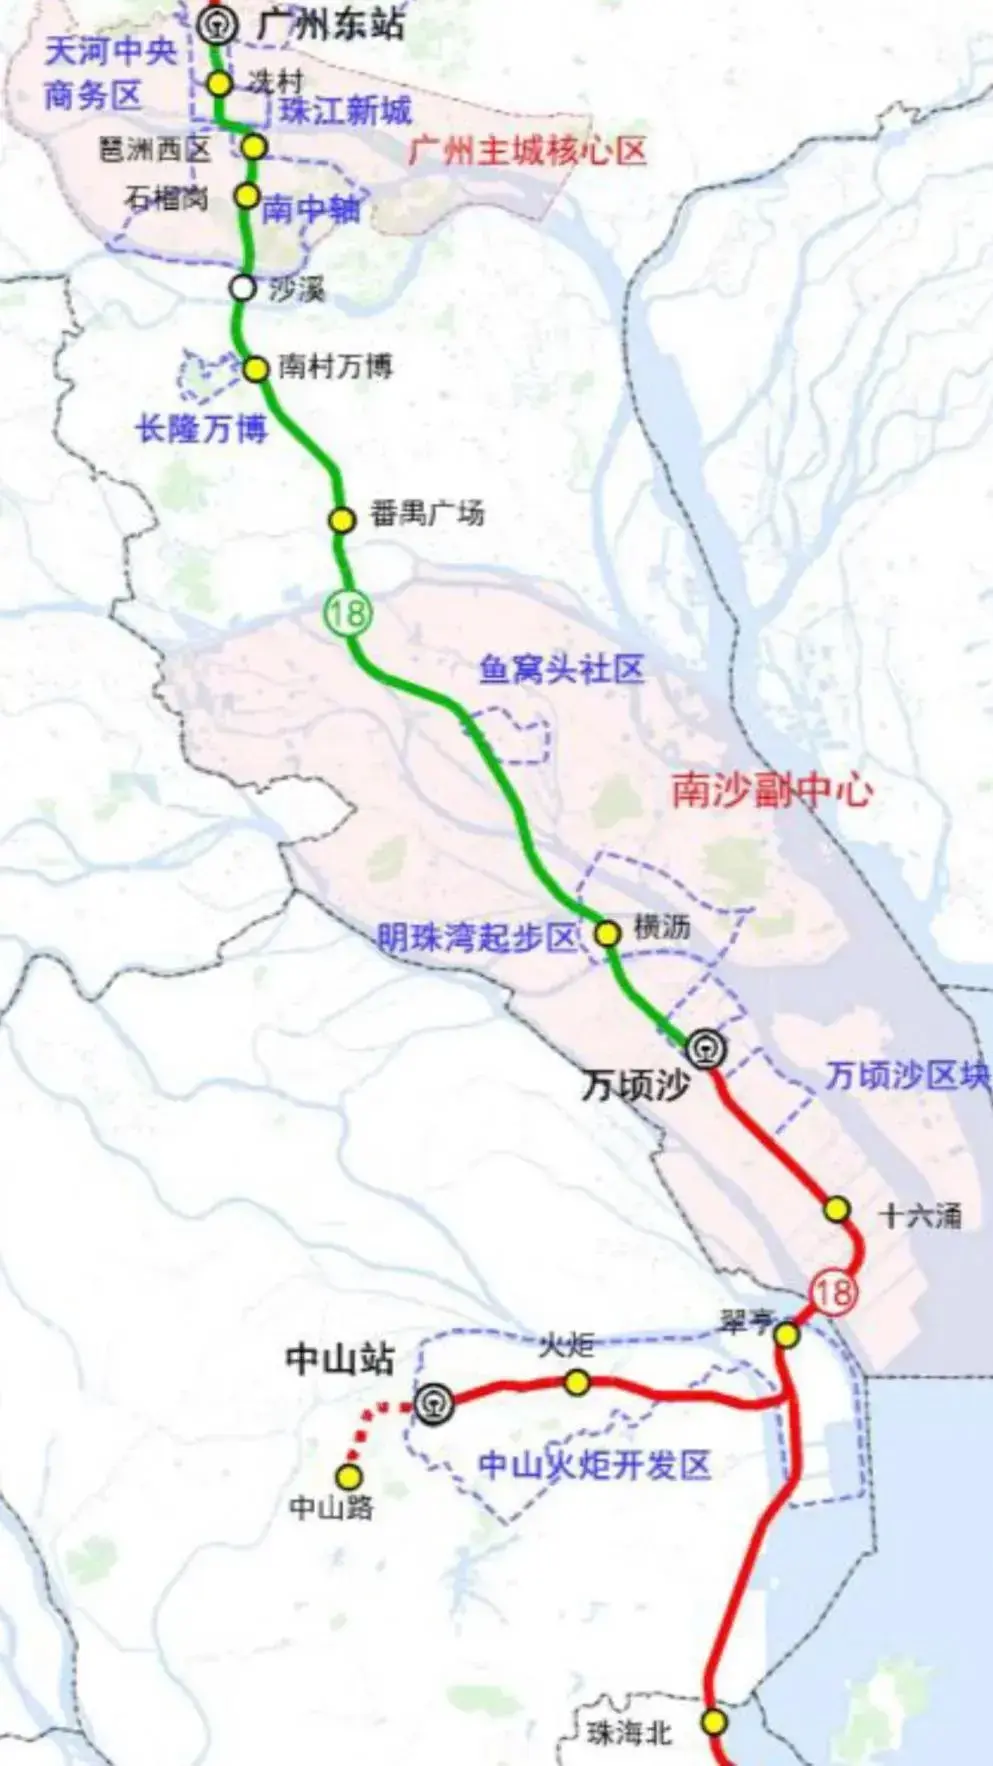 18号线地铁线路图 广州图片